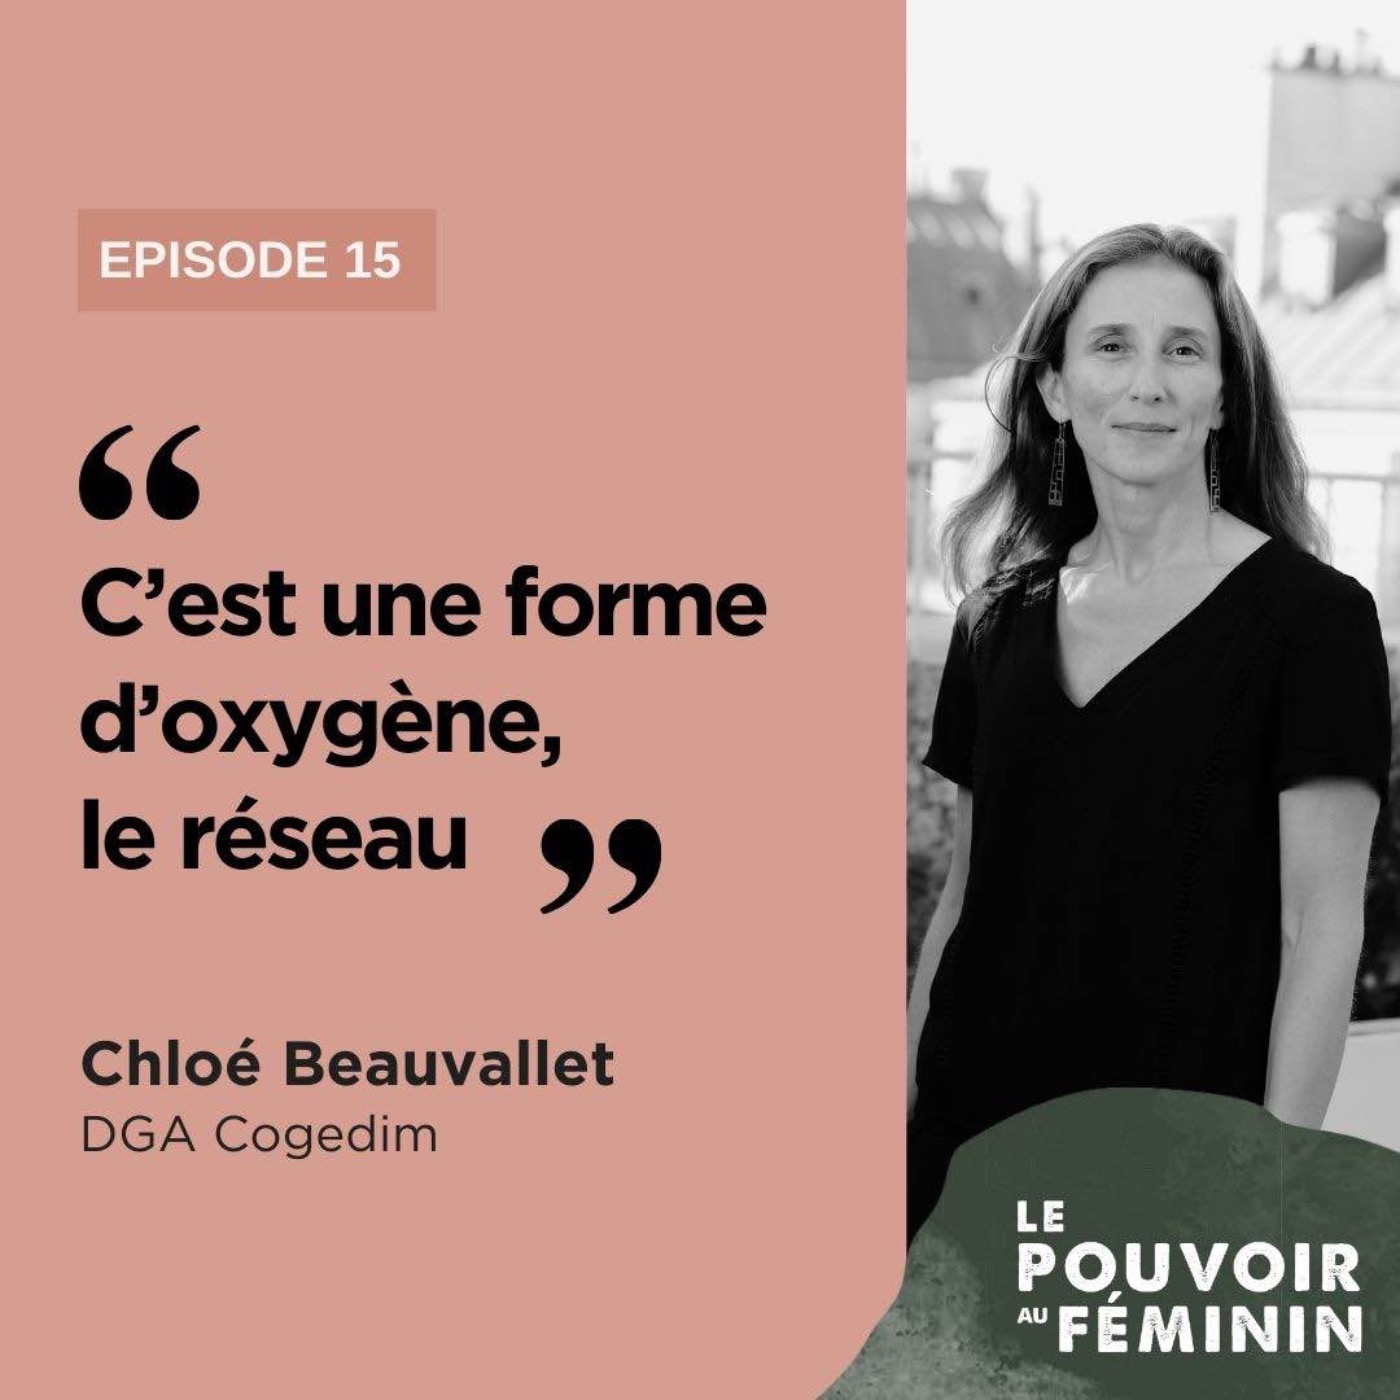 Chloé Beauvallet, DGA de Cogédim - "C'est une forme d'oxygène, le réseau."